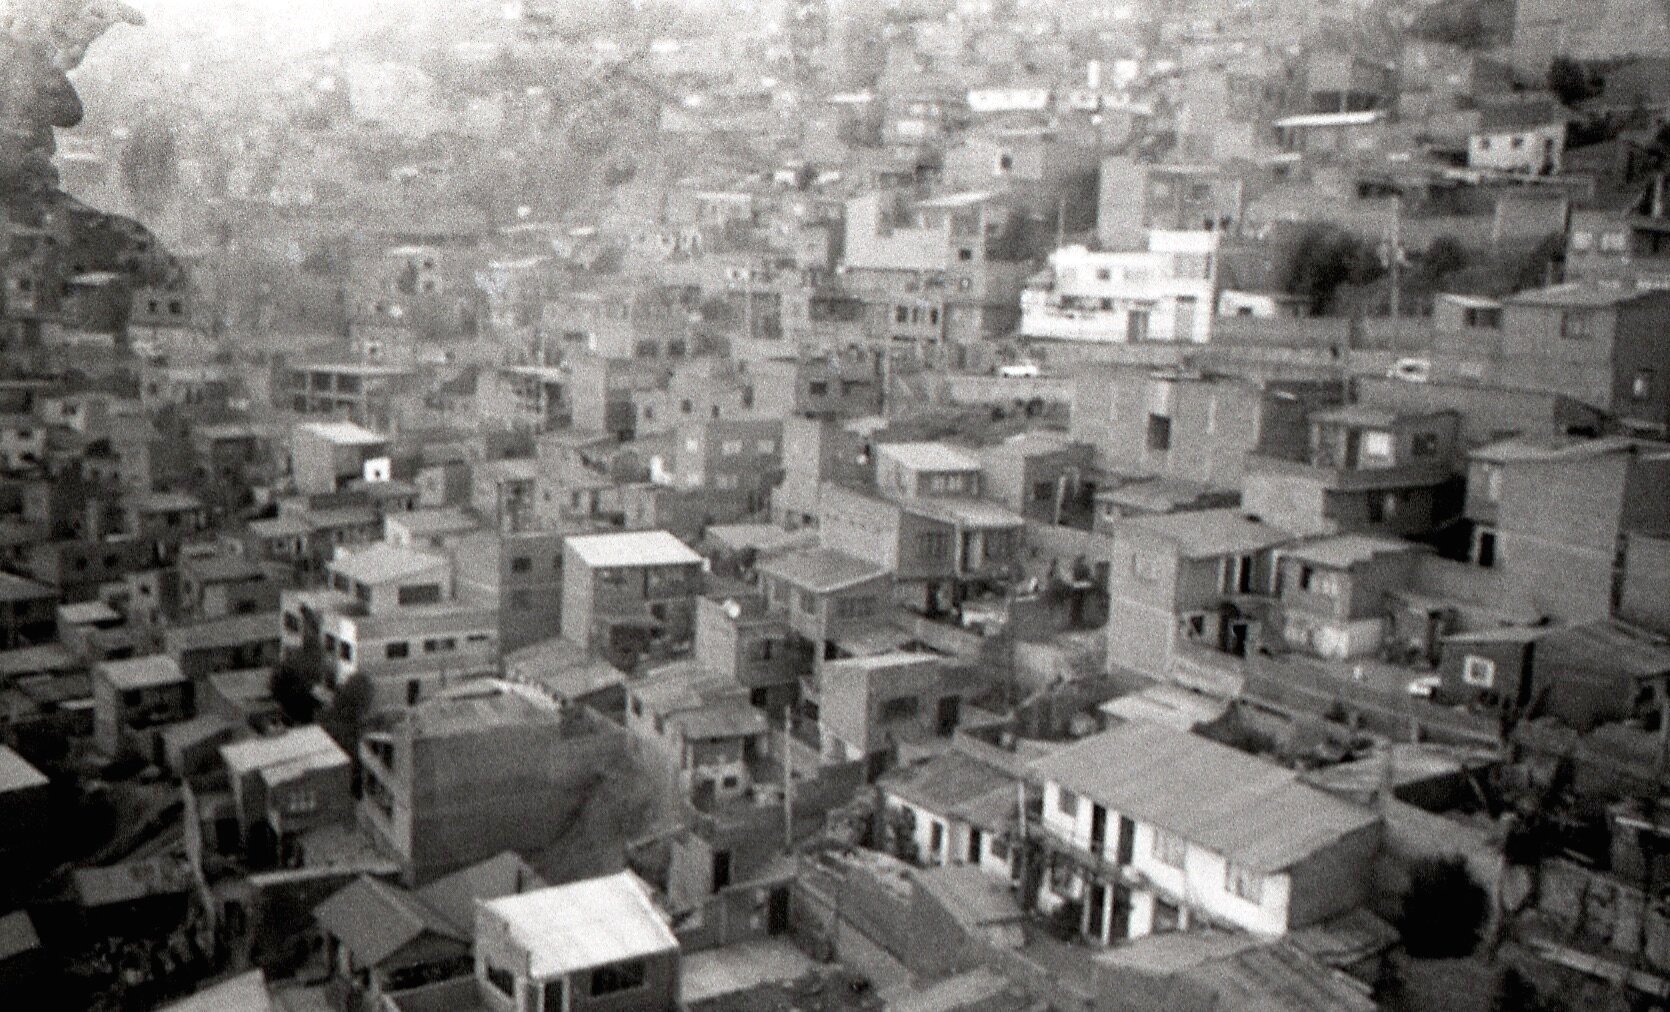 Teleferico Línea Amarilla, El Alto, La Paz,  Bolivia, Scan from 35mm Negative. 